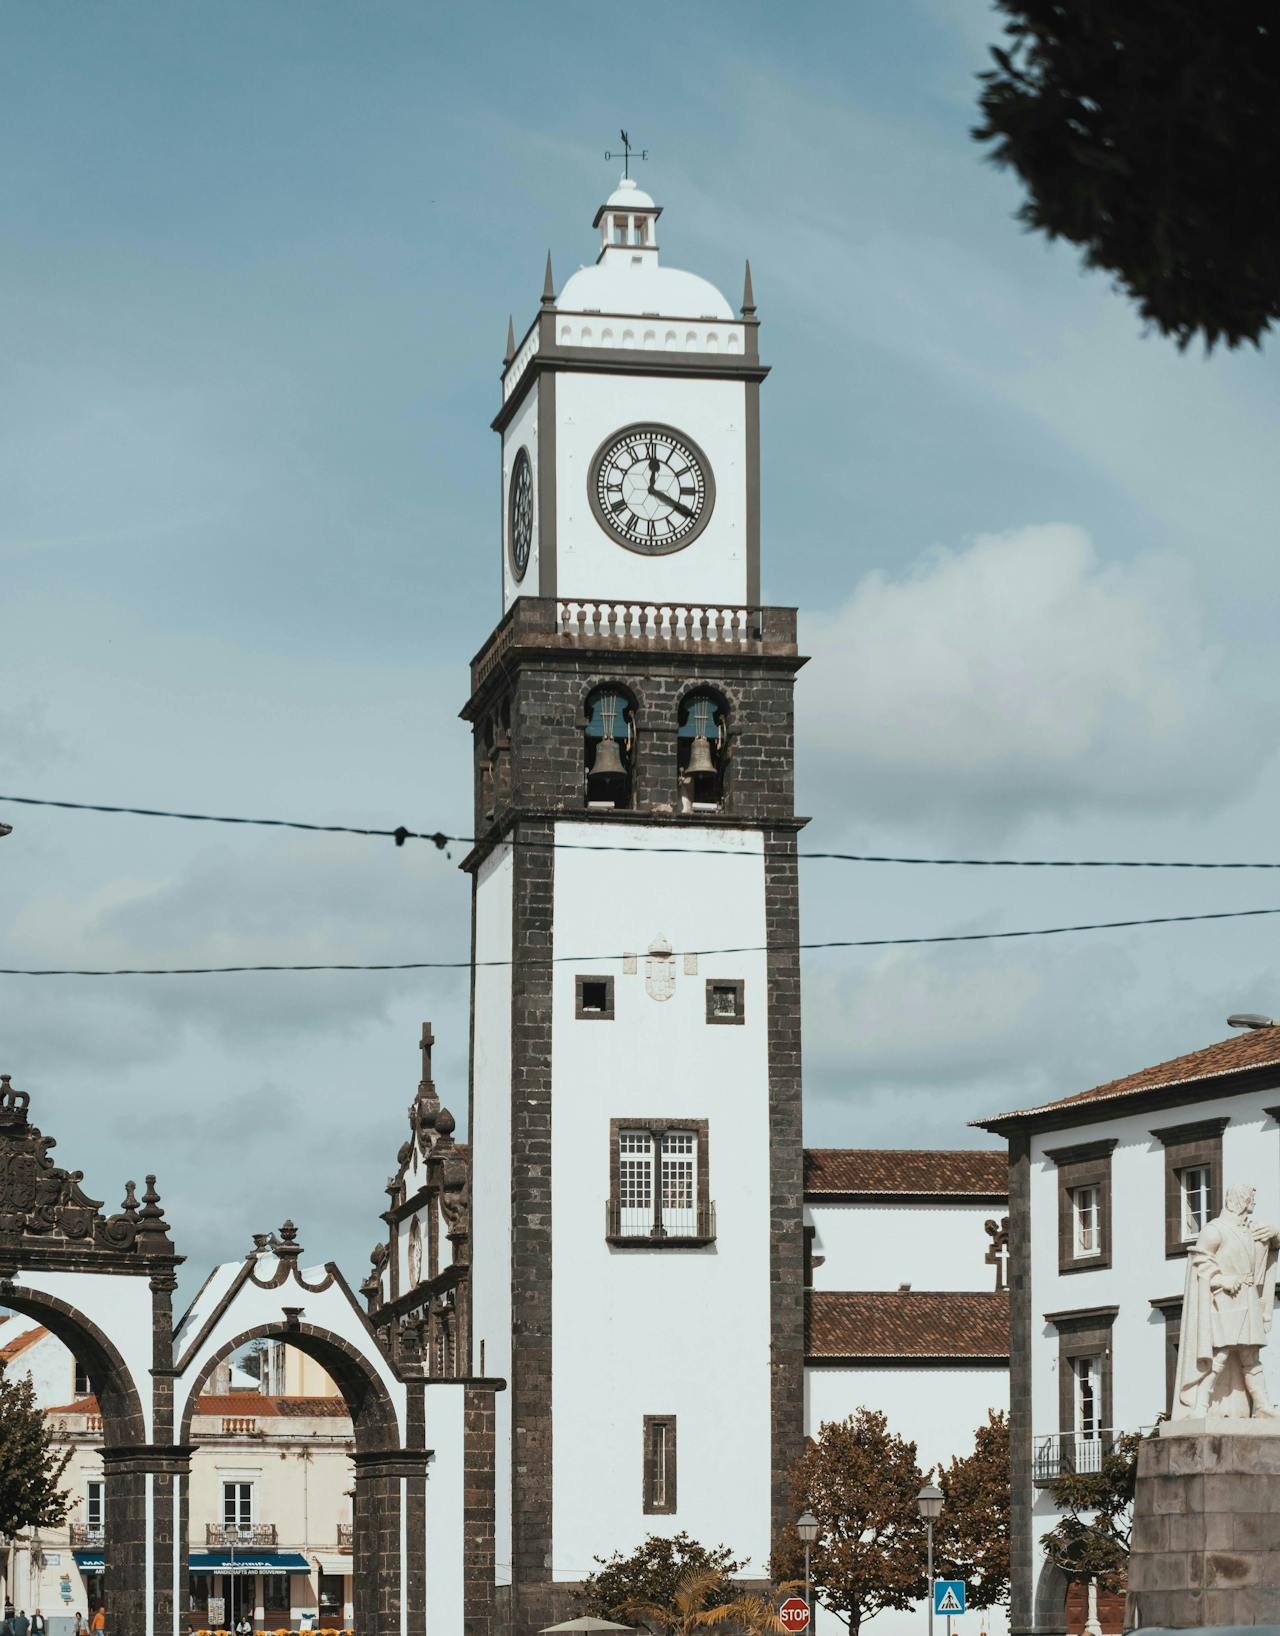 Portas de Cidade Tower in Ponta Delgada in Portugal.